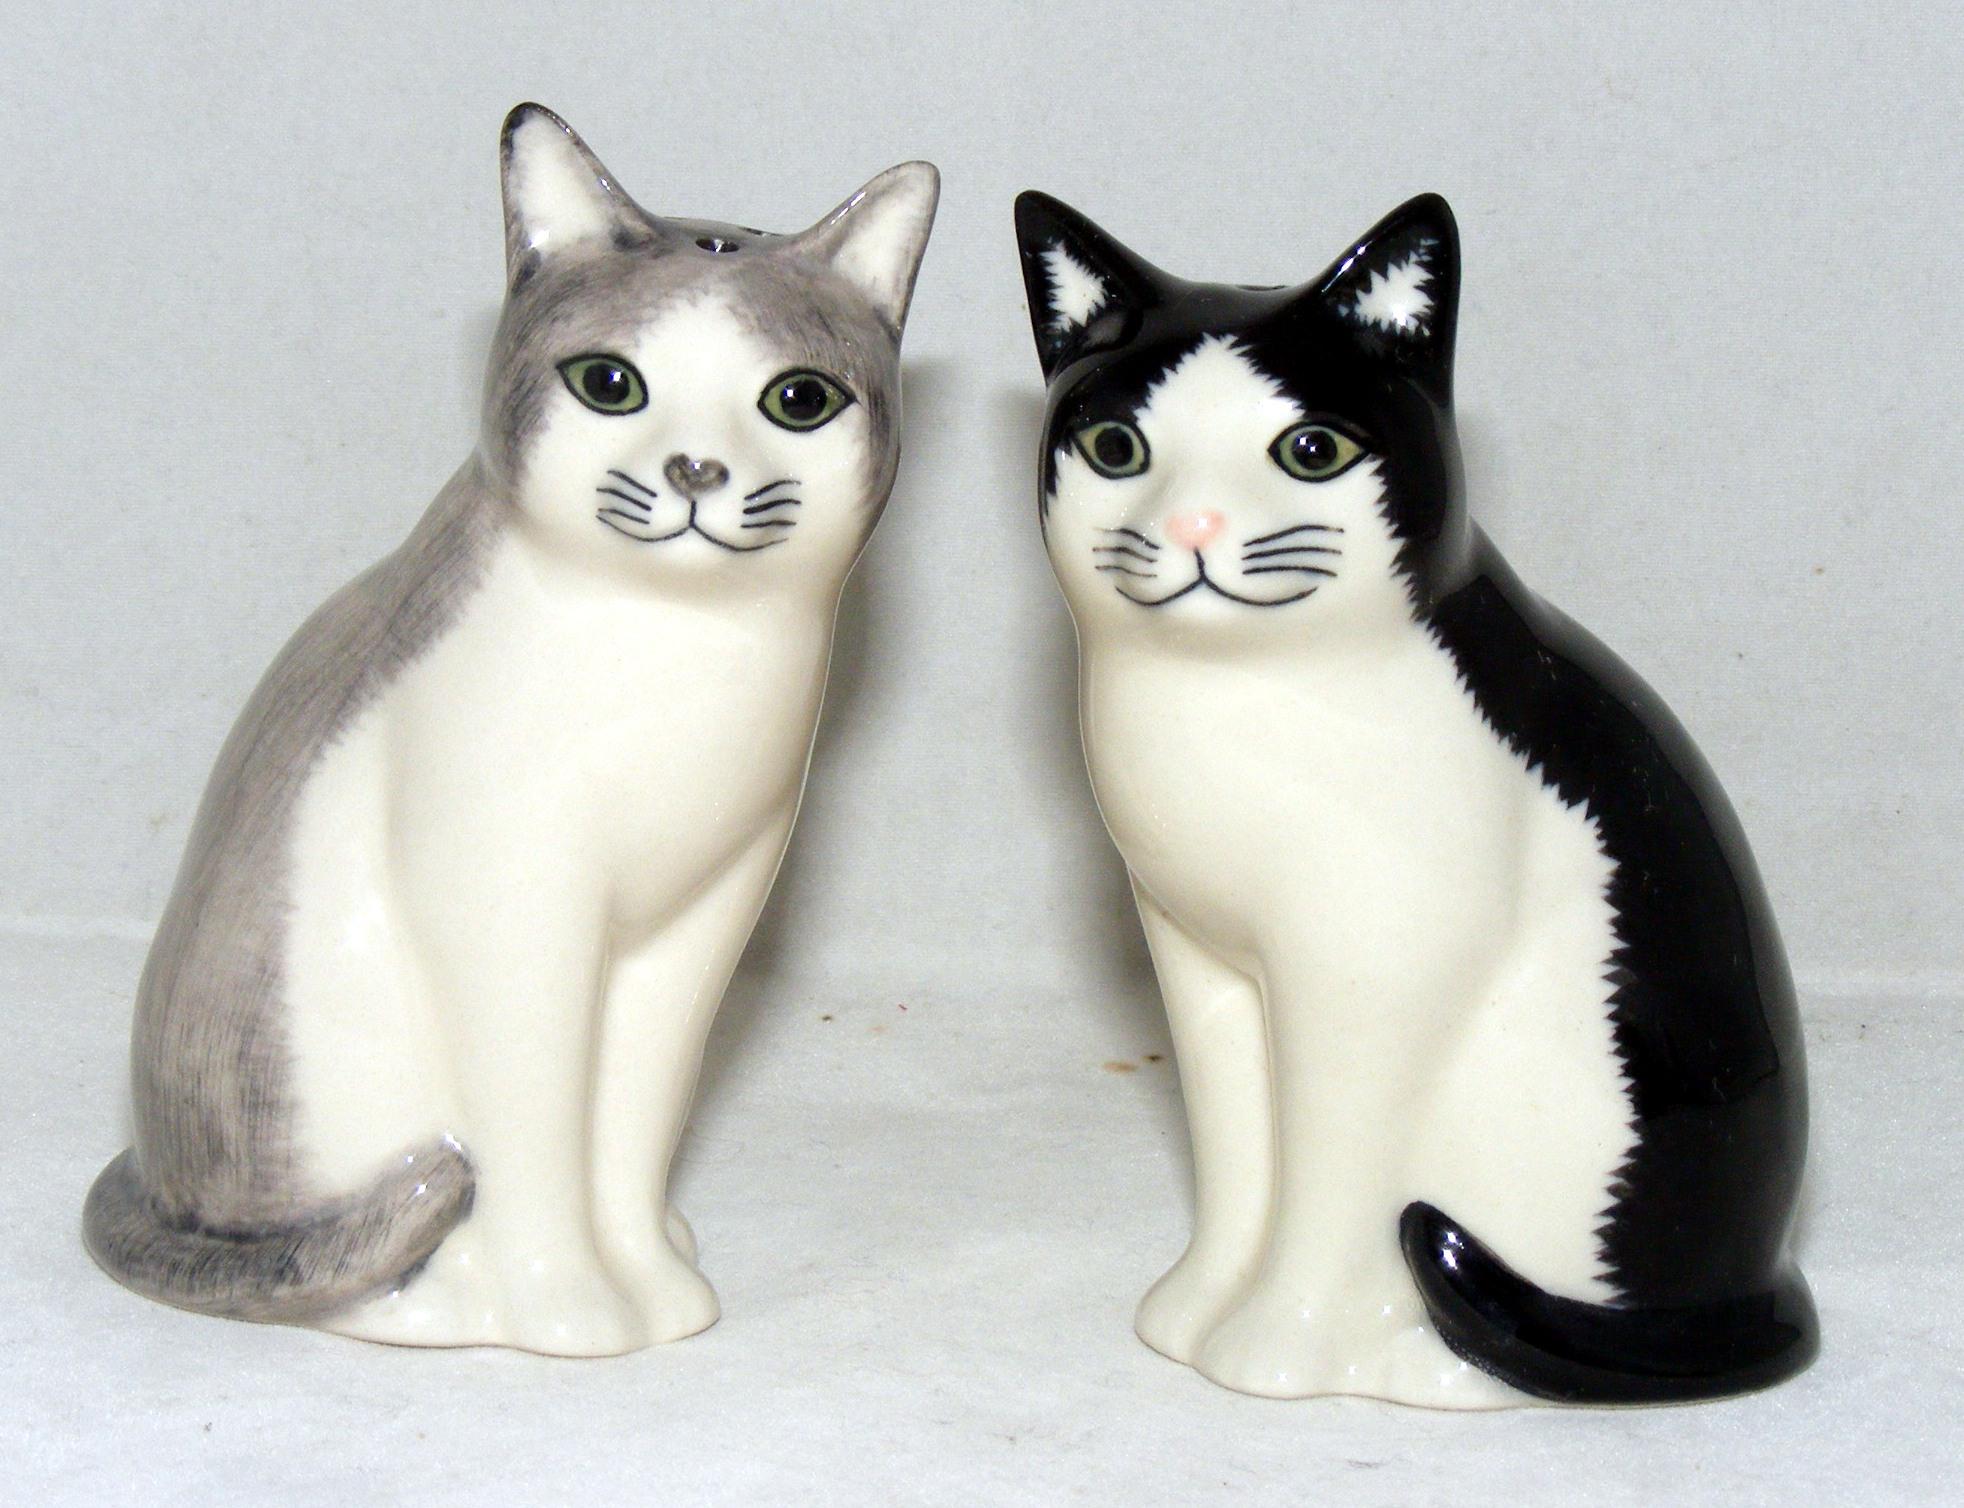 Quail Ceramics Cat Salt & Pepper Shaker Set